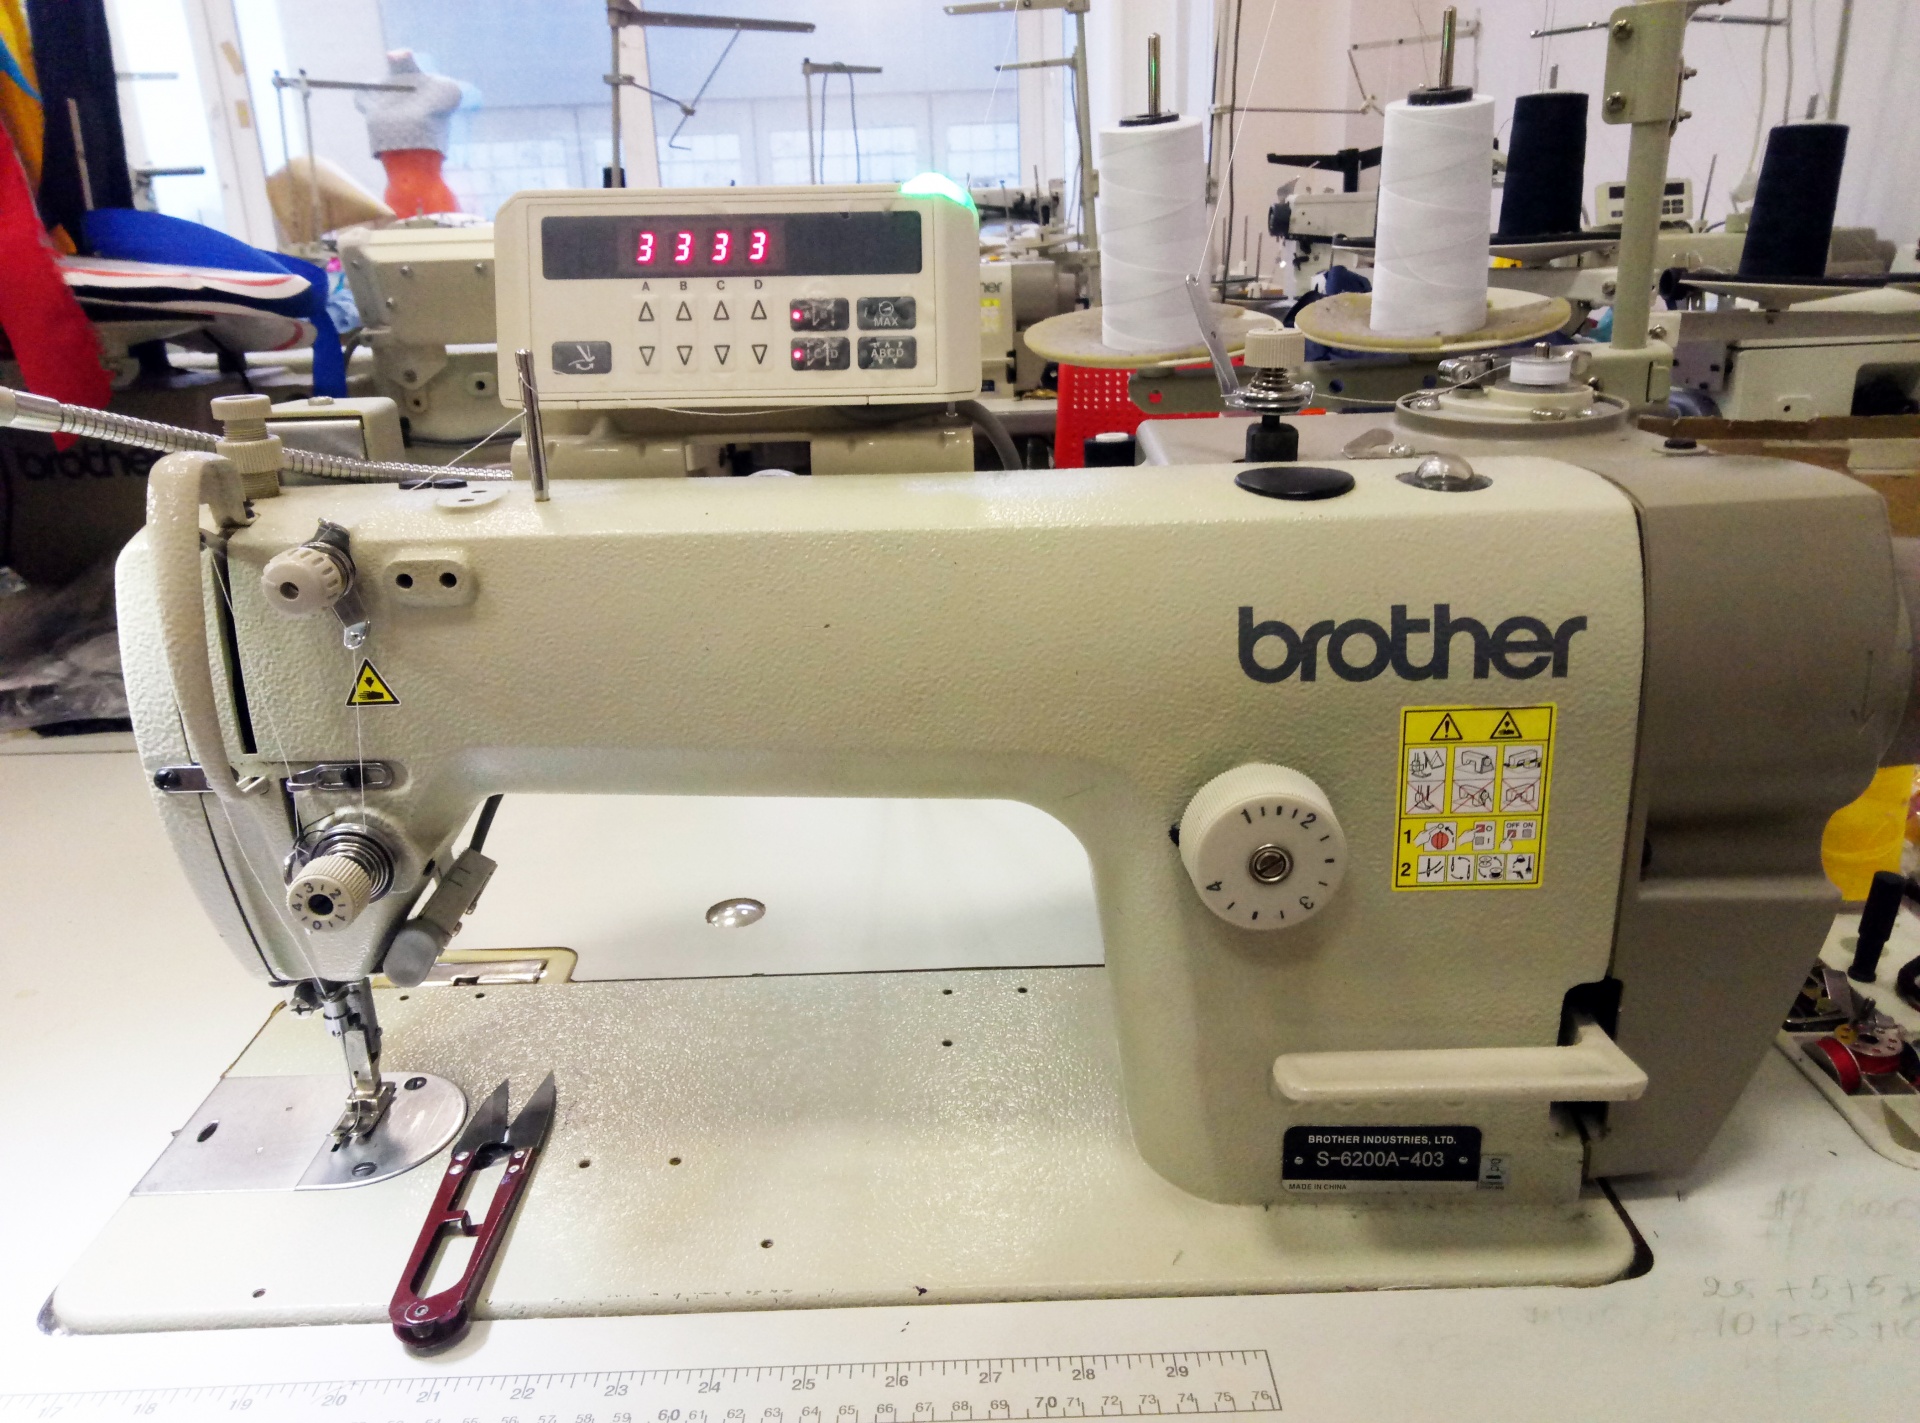 Б у промышленные швейные. Машинка brother s 6200a 403 швейная. Машинка швейная brother s 6200a. Промышленная швейная машина Бразер. Промышленная швейная машина brother s-7220c-403.